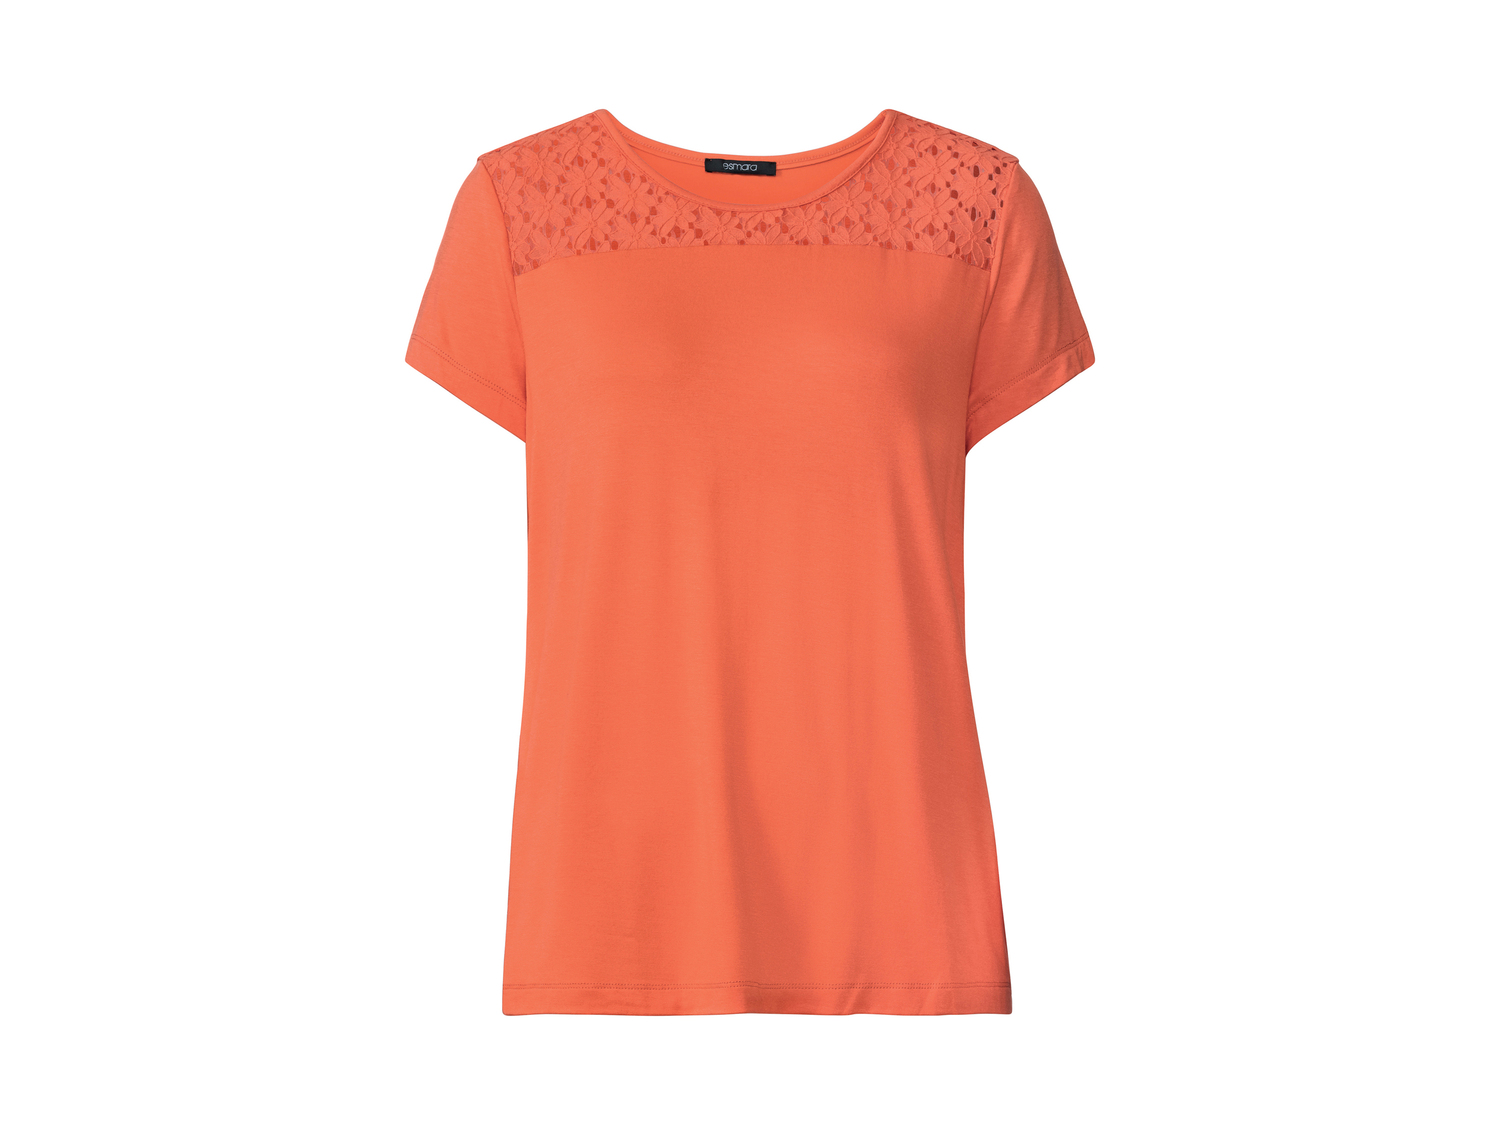 T-shirt da donna Esmara, prezzo 5.99 &#8364; 
Misure: S-L
Taglie disponibili
 ...